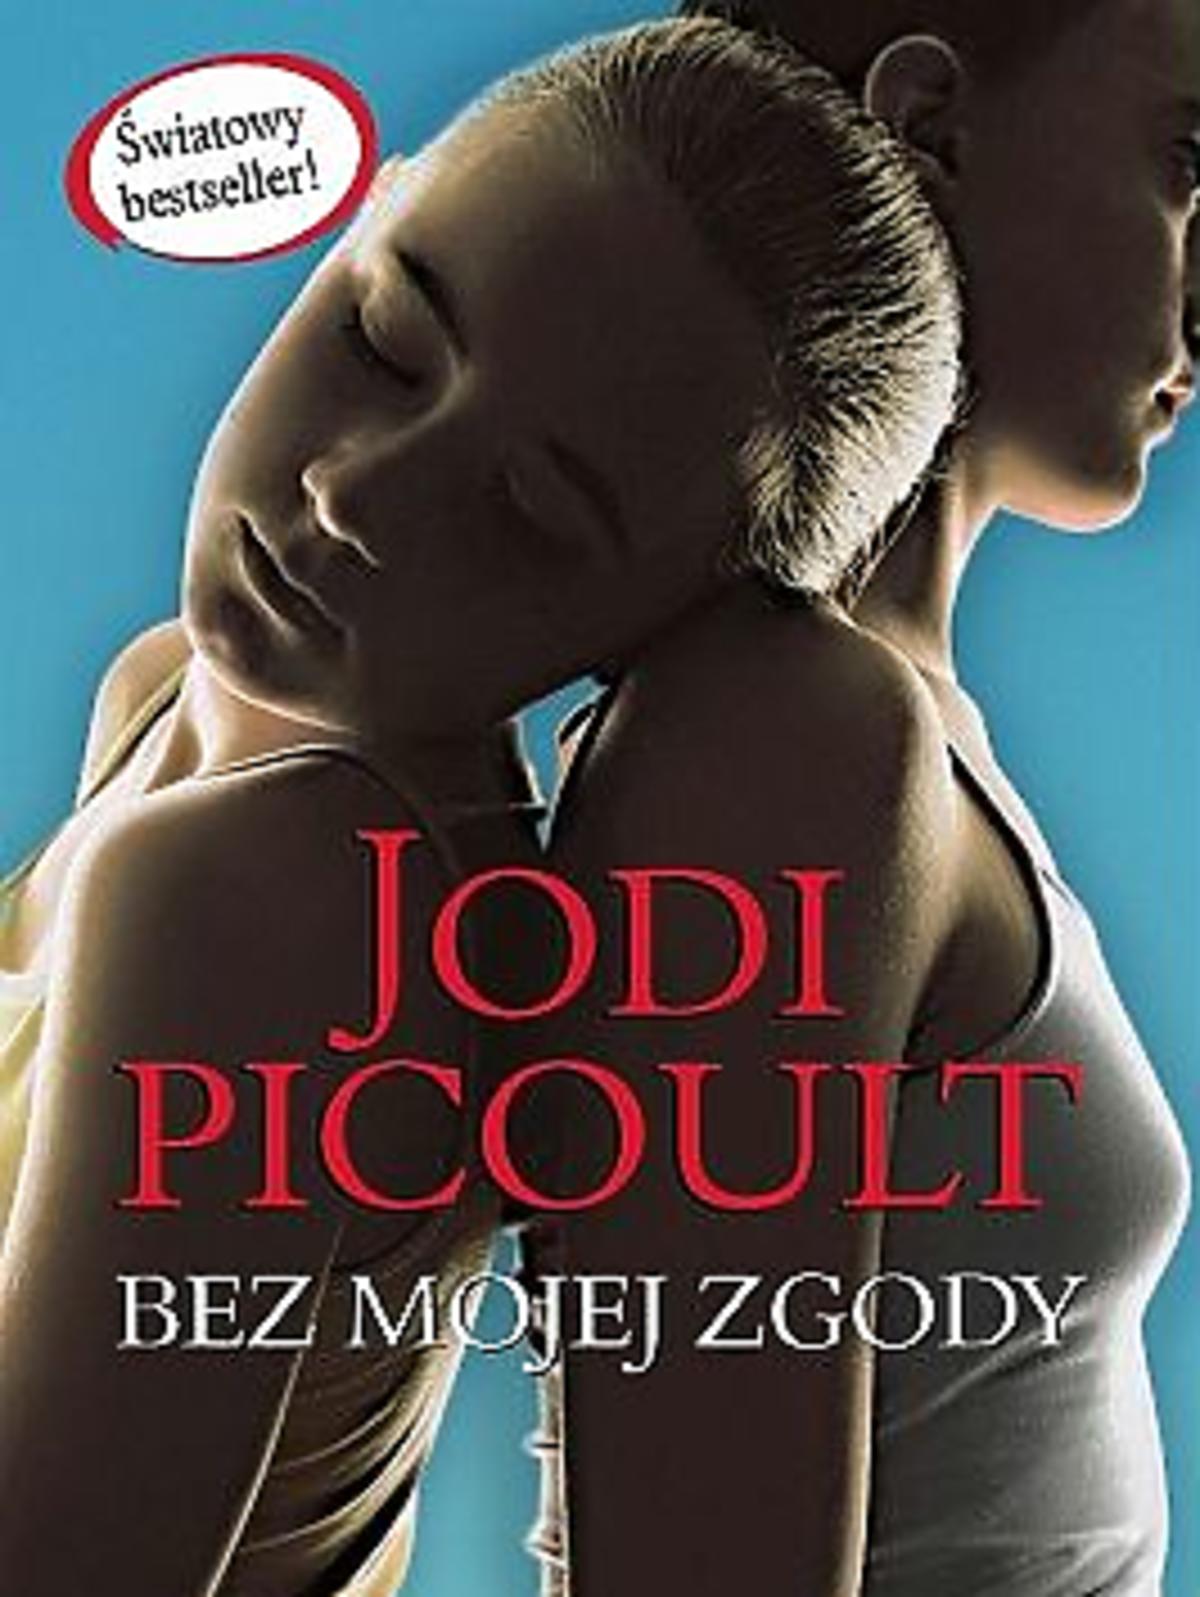 Bez mojej zgody, Jodi Picoult